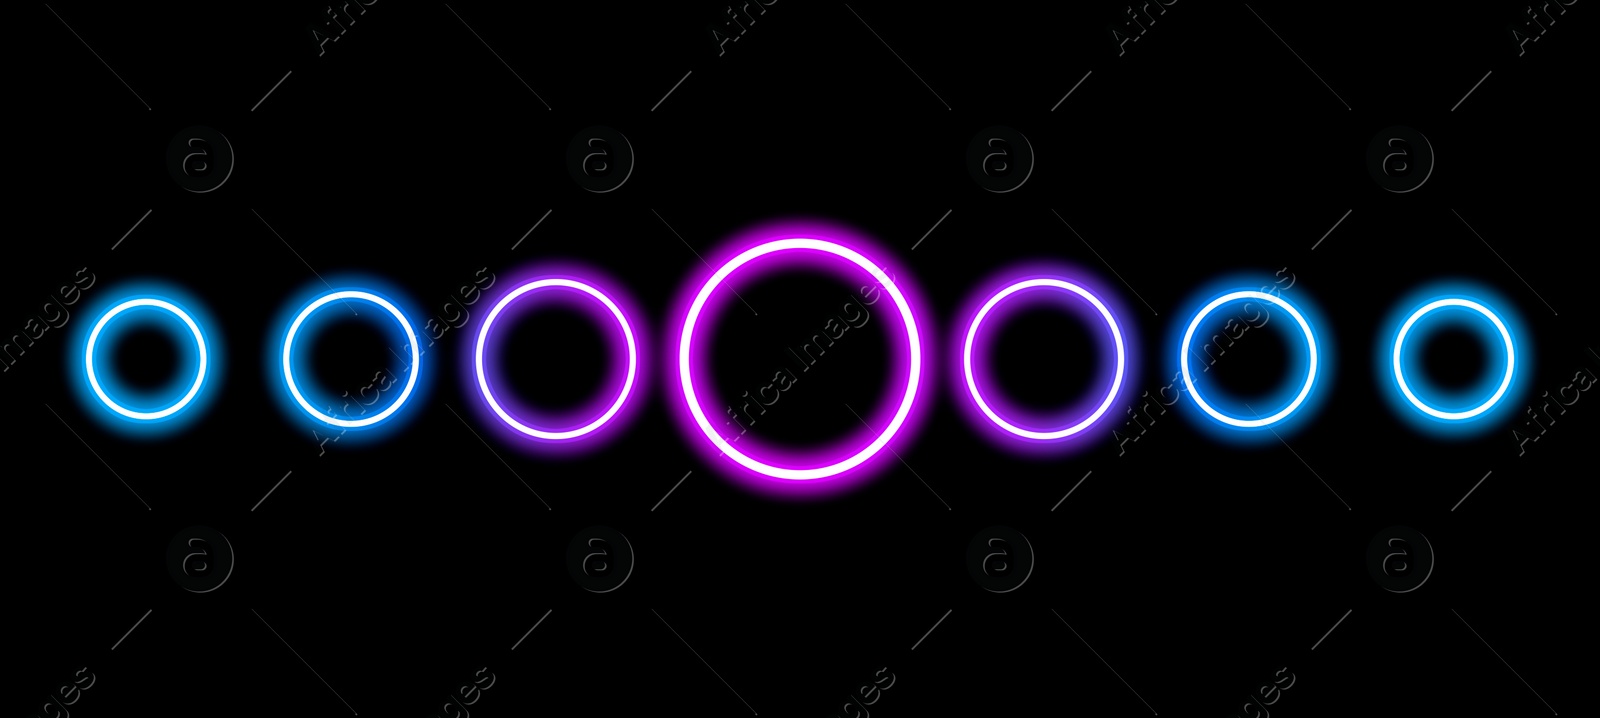 Image of Circles on black background, illustration. Banner design